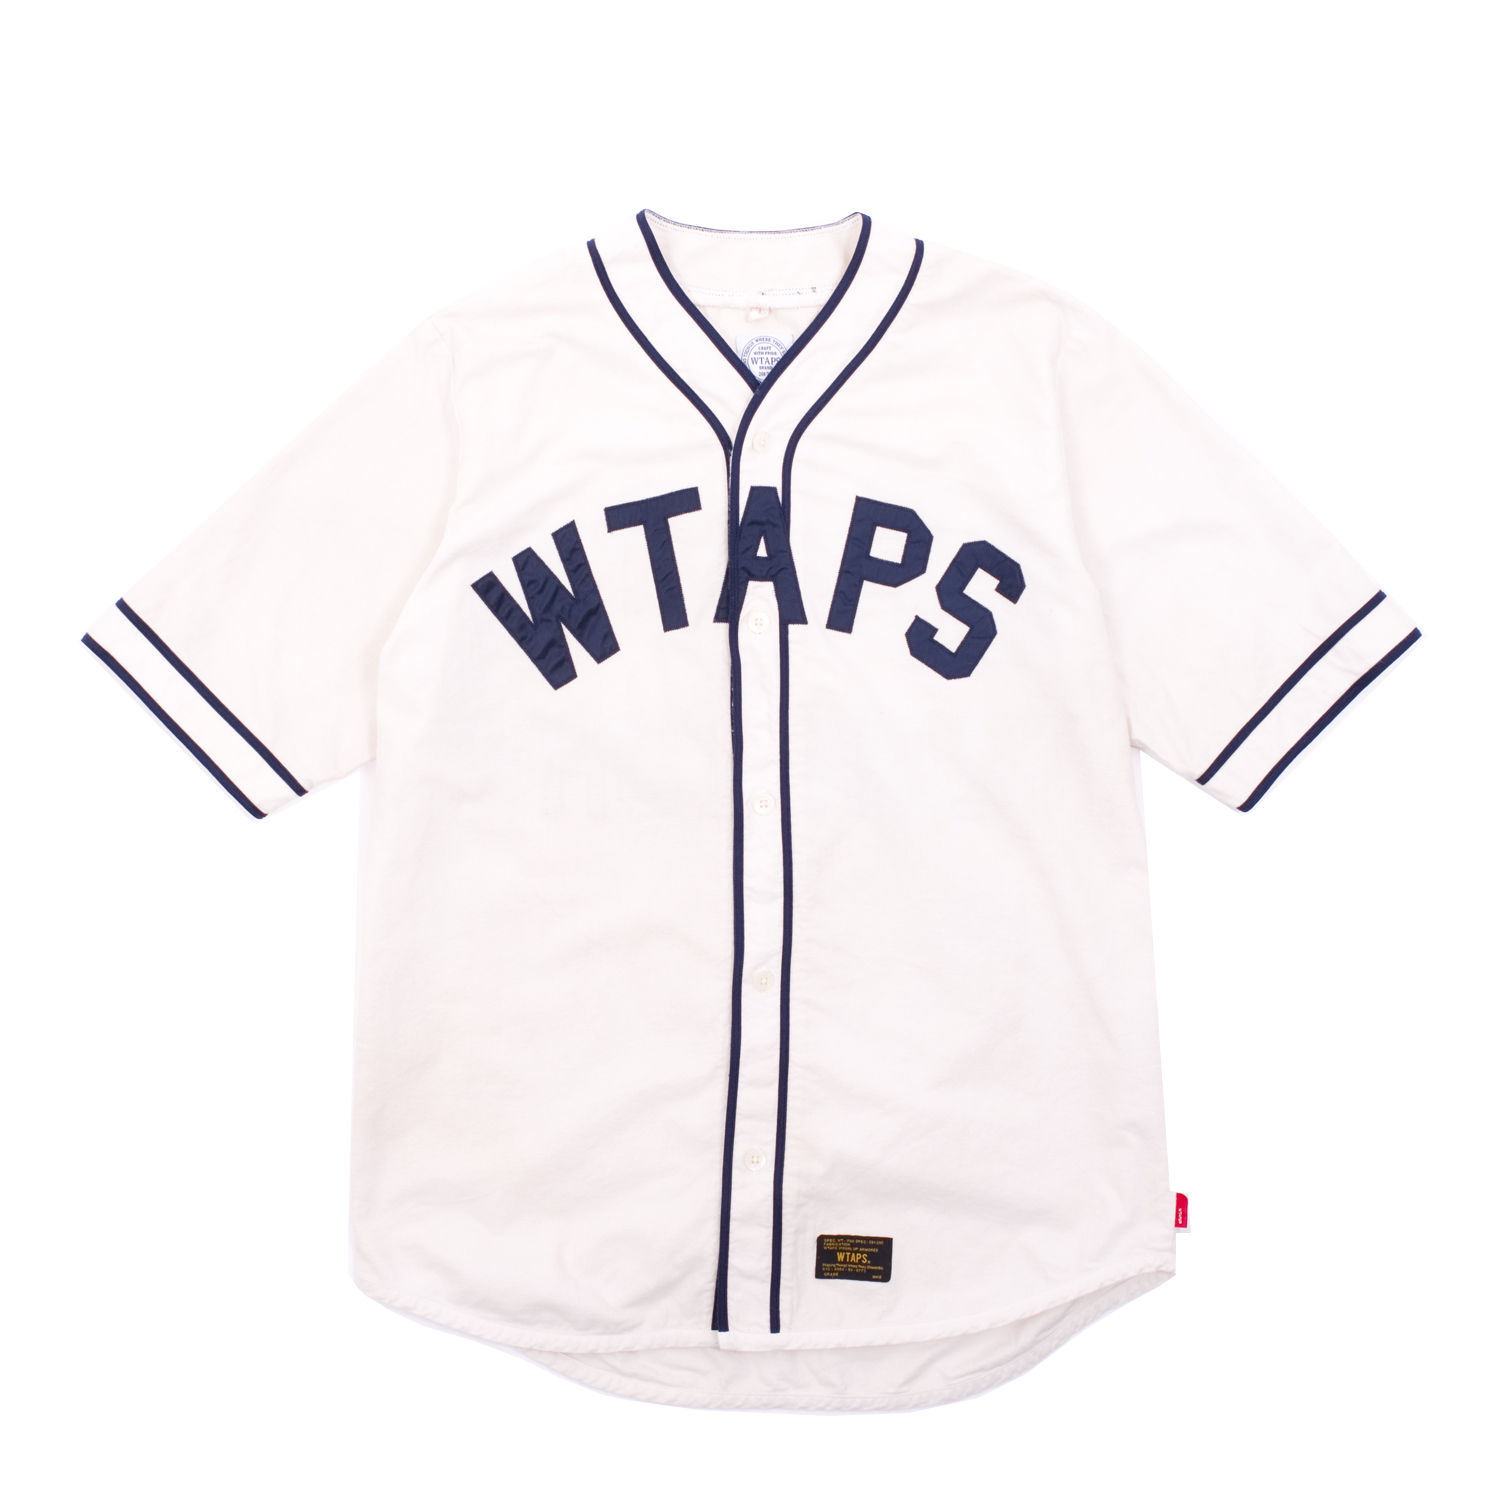 Wtaps League Shirt | FIRMAMENT - Berlin Renaissance